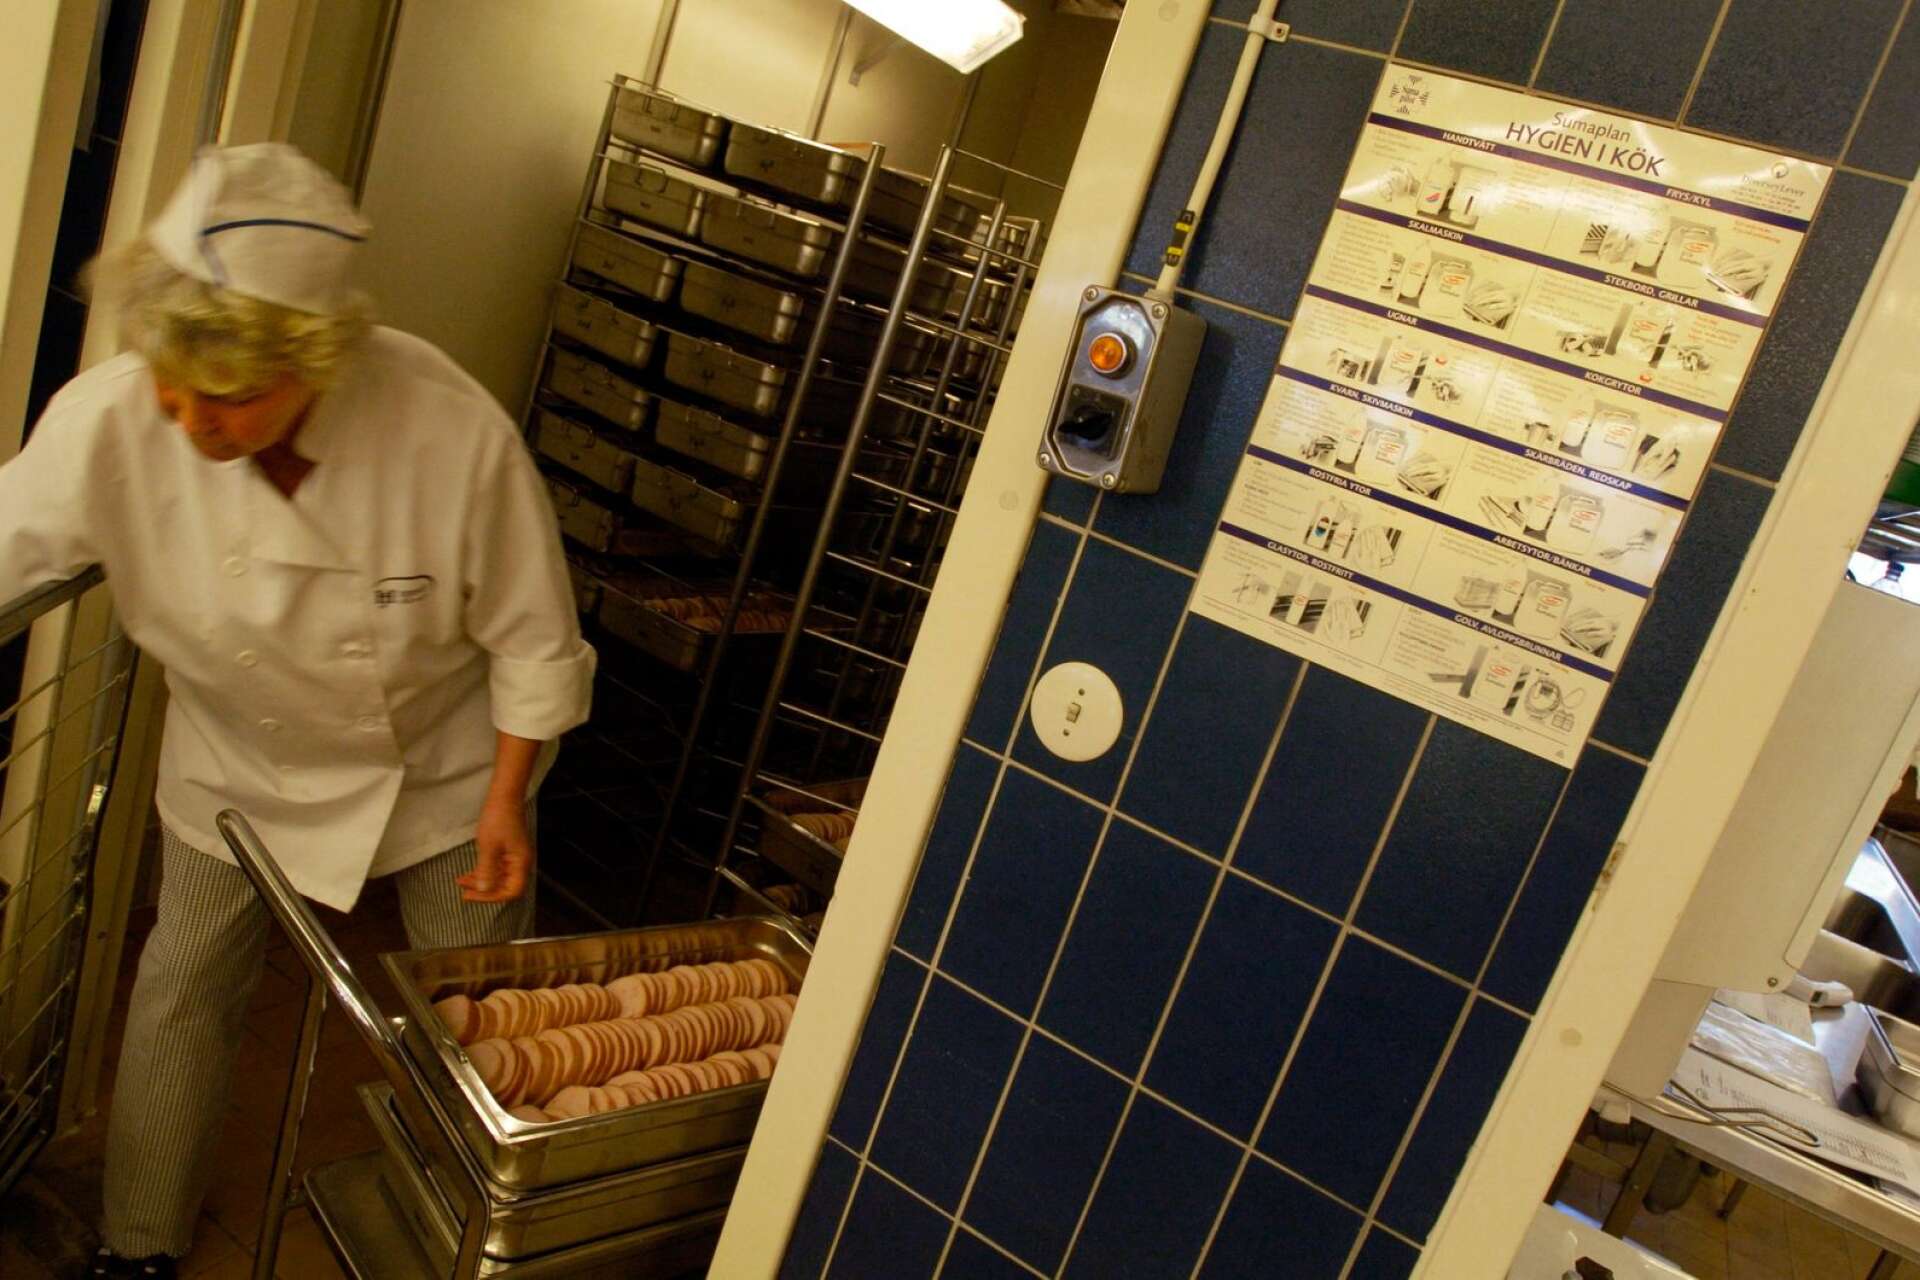 Karlstads kommun kontrollerar över 700 kök på krogar och andra serveringar varje år och resultaten offentliggörs på webben. Köket på bilden är dock fotograferat i annat sammanhang på annan plats i landet.